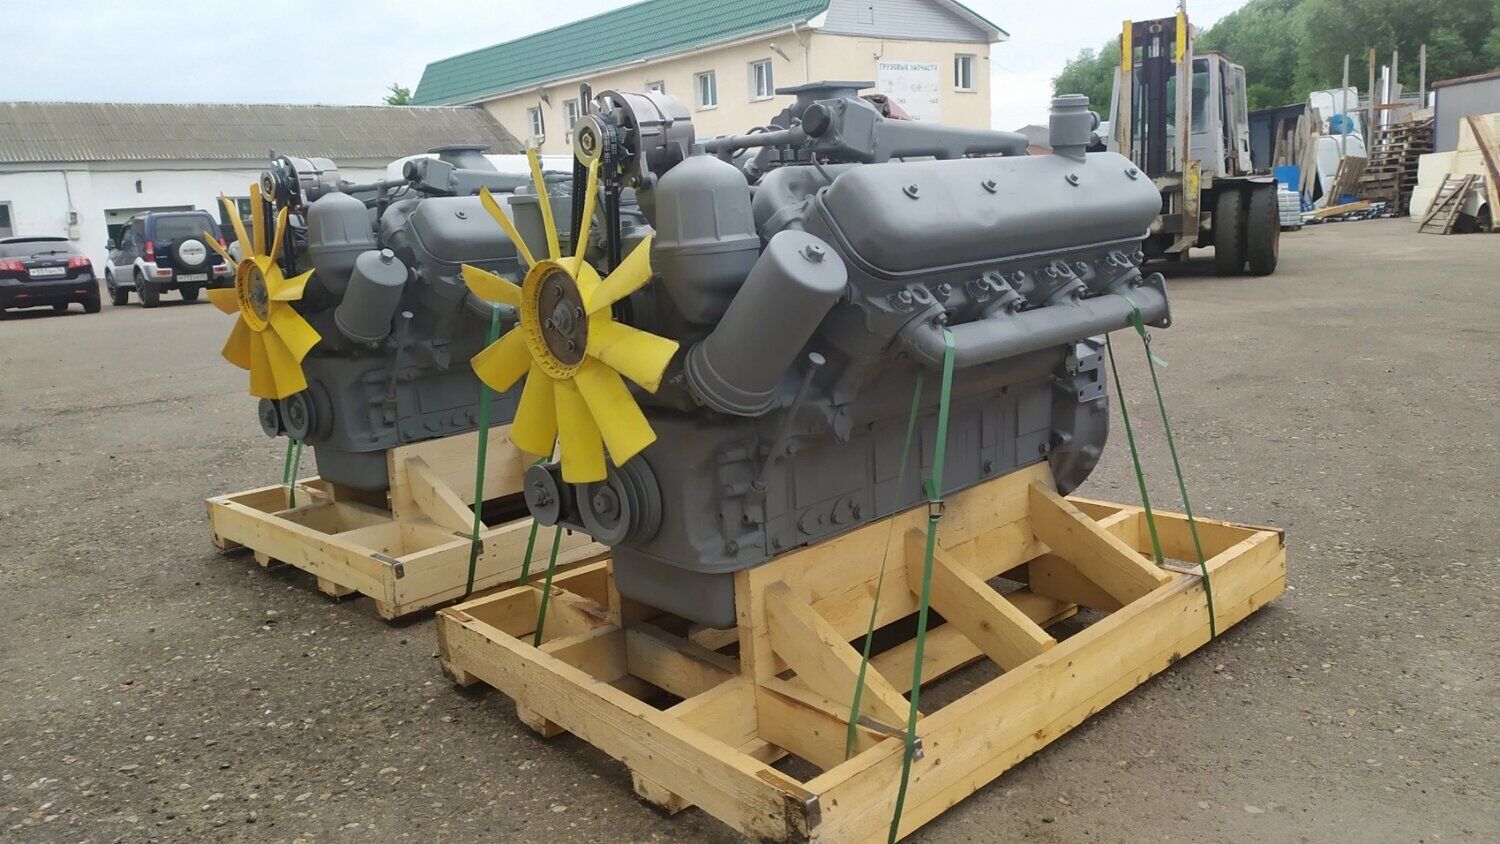 Двигатель 238М2-1000186 ЯМЗ проектной сборки без КПП и сцепления на блоке старого образца